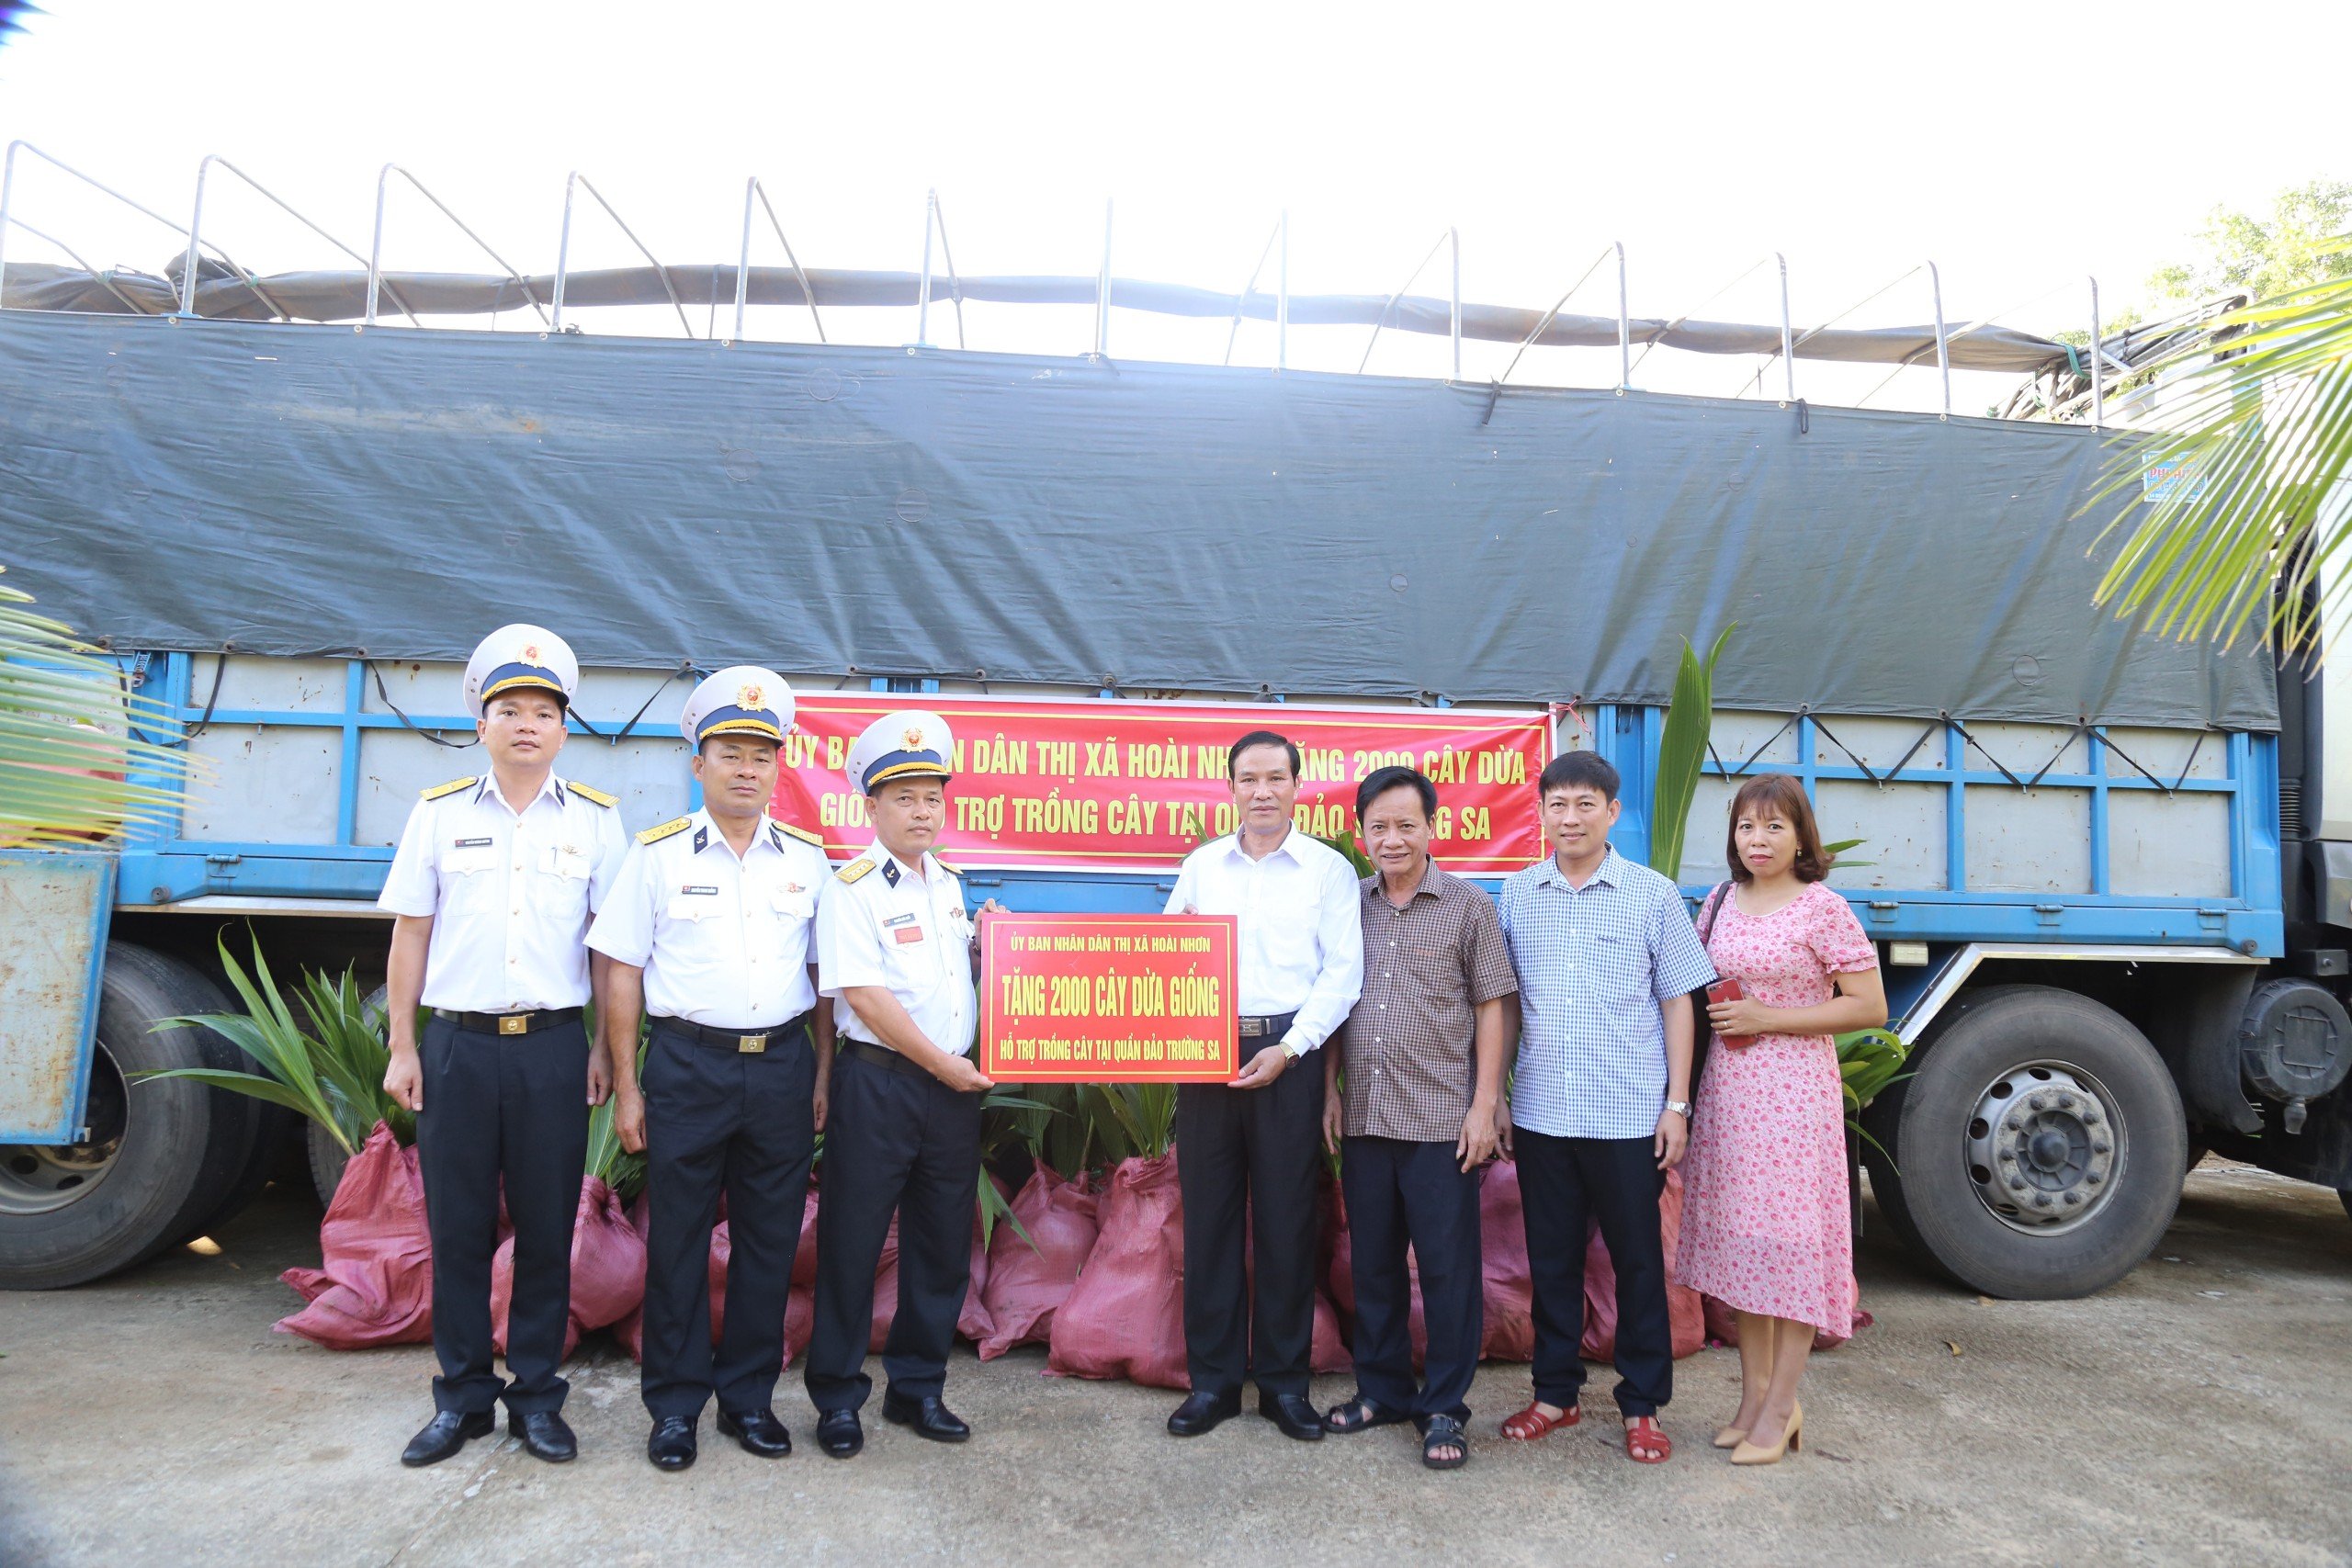 Vùng 4 Hải quân: Tiếp nhận 2000 cây dừa giống từ Thị xã Hoài Nhơn tặng.